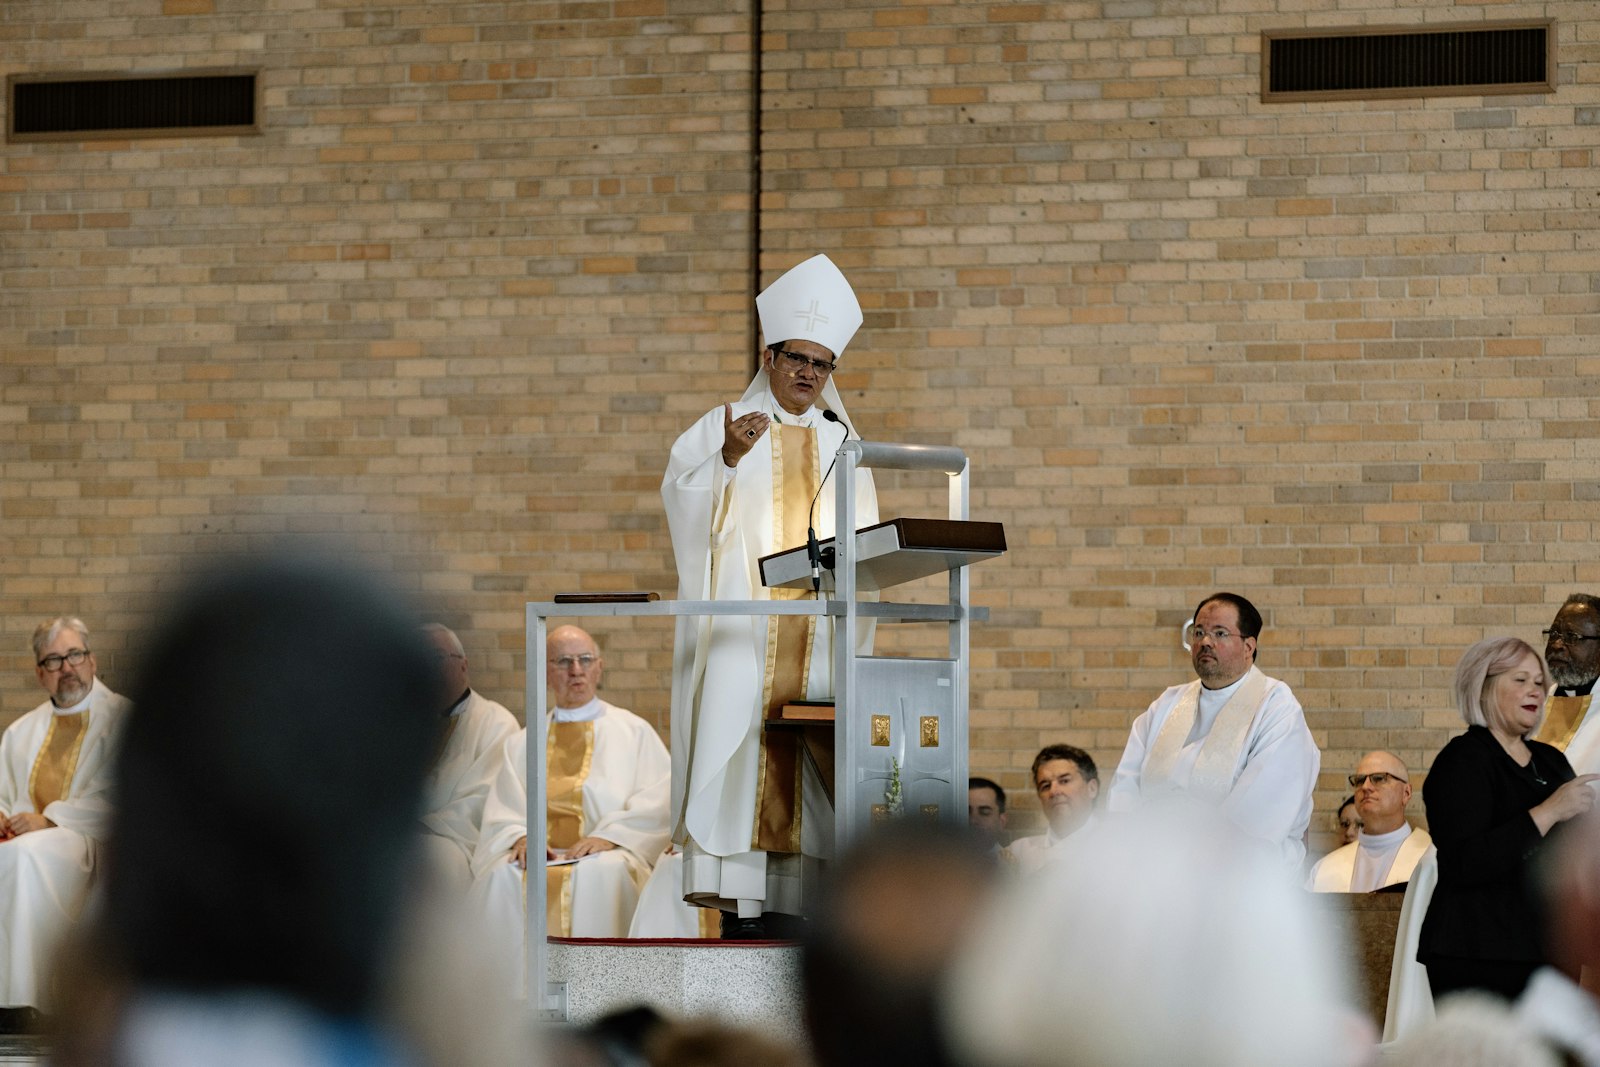 El Obispo Auxiliar Arturo Cepeda pronunció el discurso de apertura en español y celebró la Misa junto con el Arzobispo de Detroit Allen H. Vigneron. (Alissa Tuttle | Especial para Detroit Catholic)